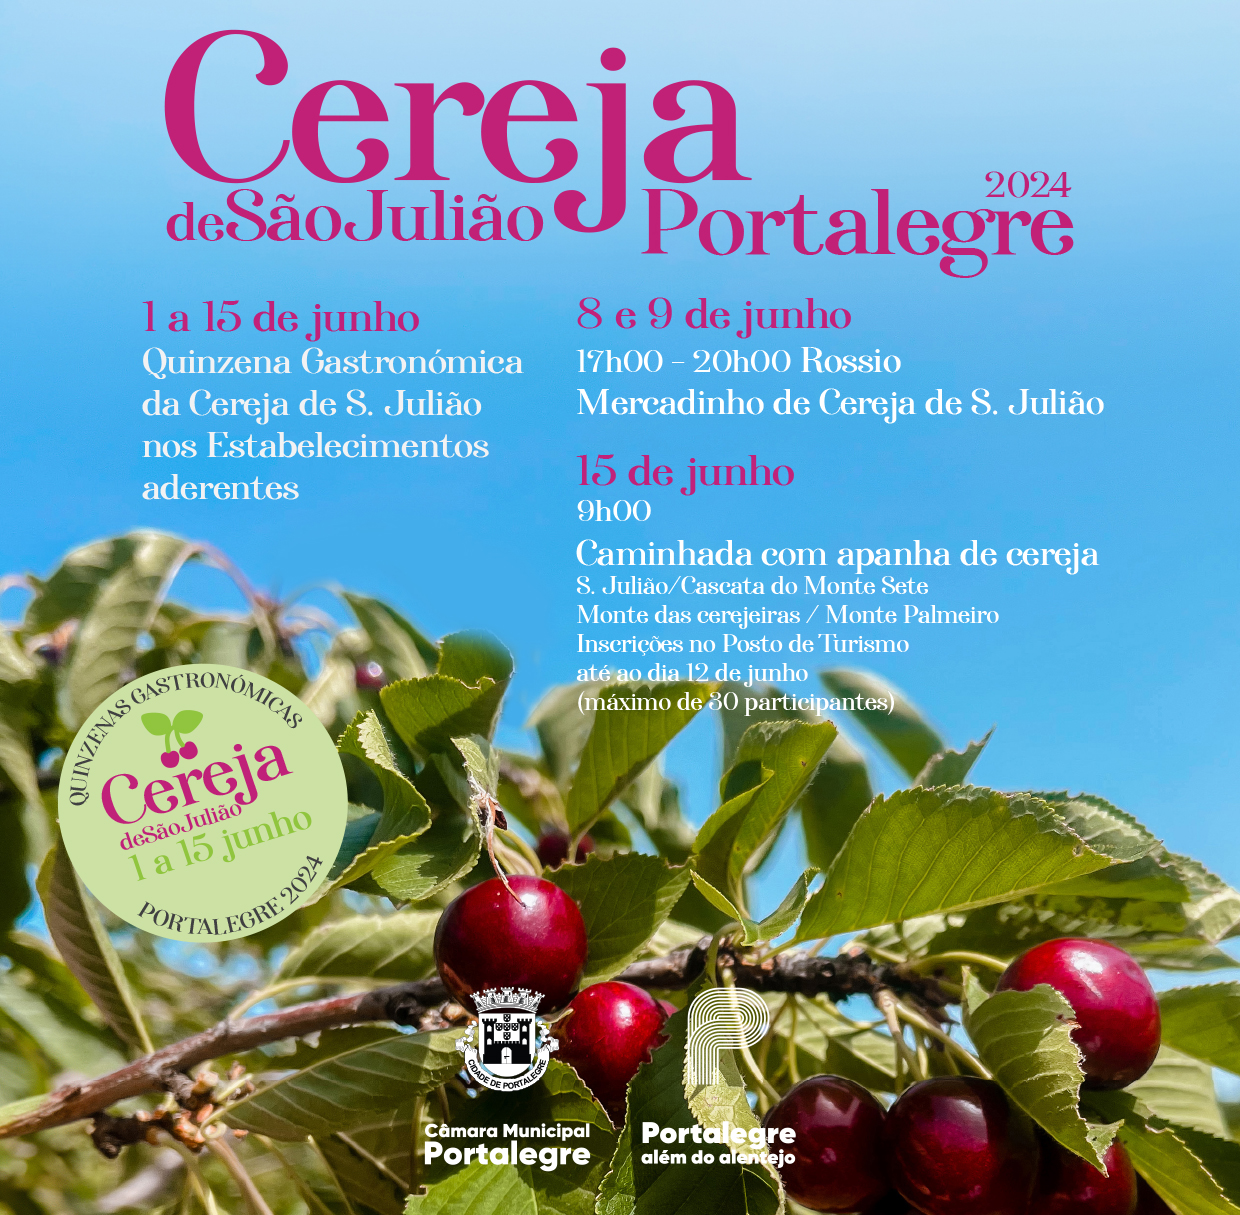 Cereja de São Julião Portalegre 2024